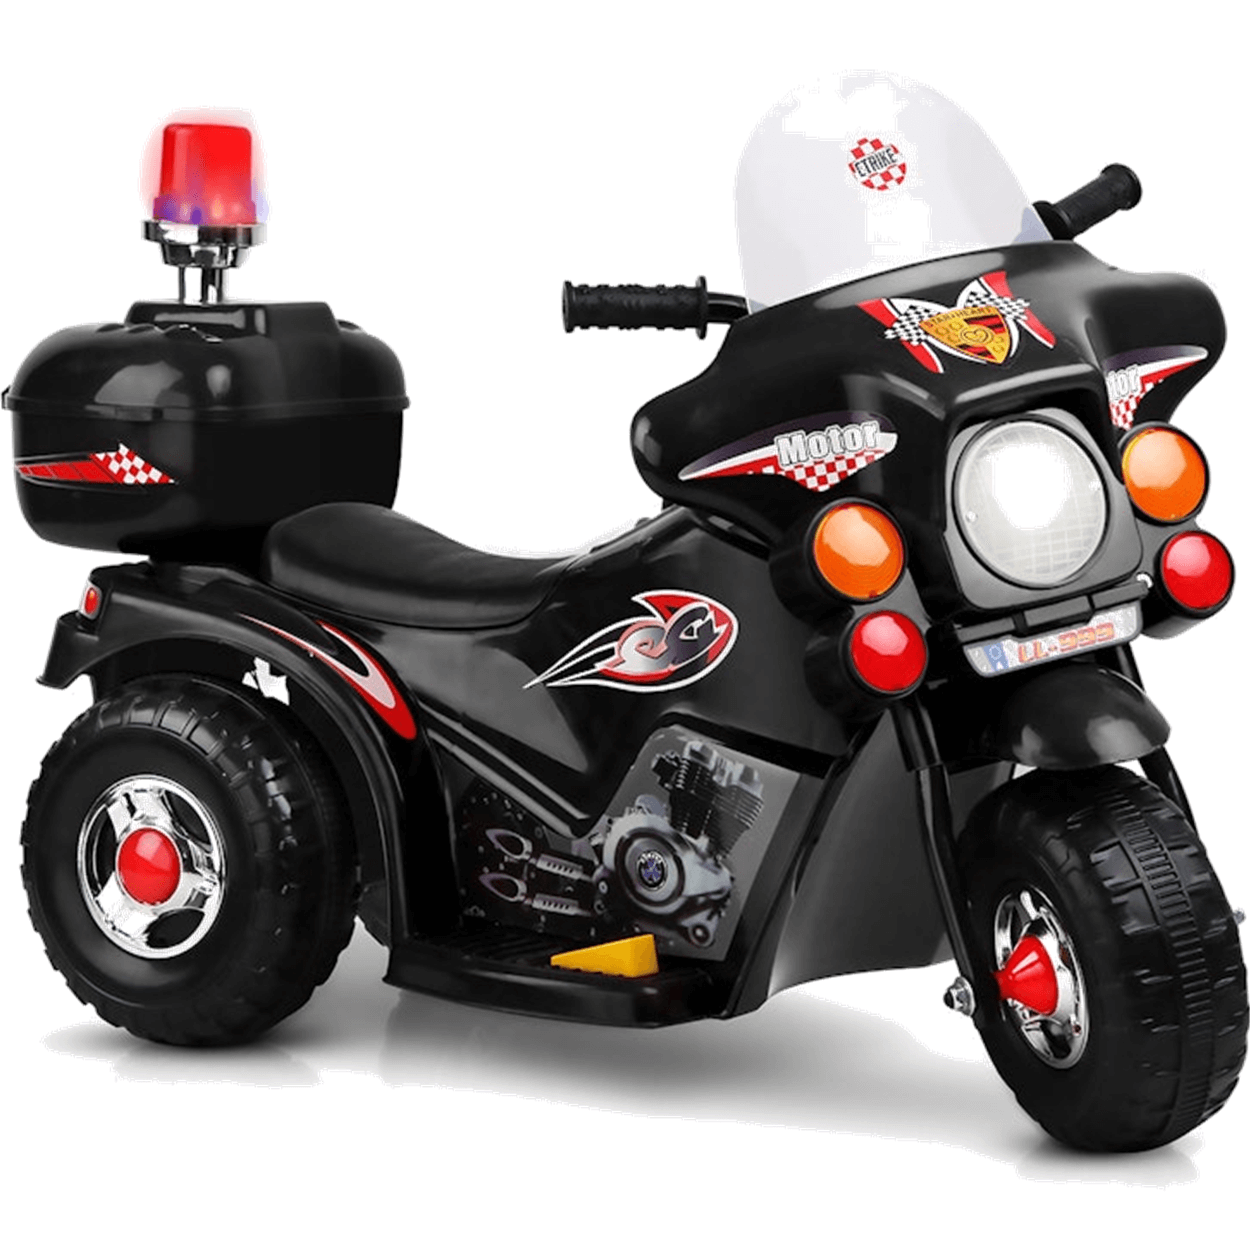 Moto Eletrica Infantil Policia Shiny Toys Motorcycle 6v Preta - 1